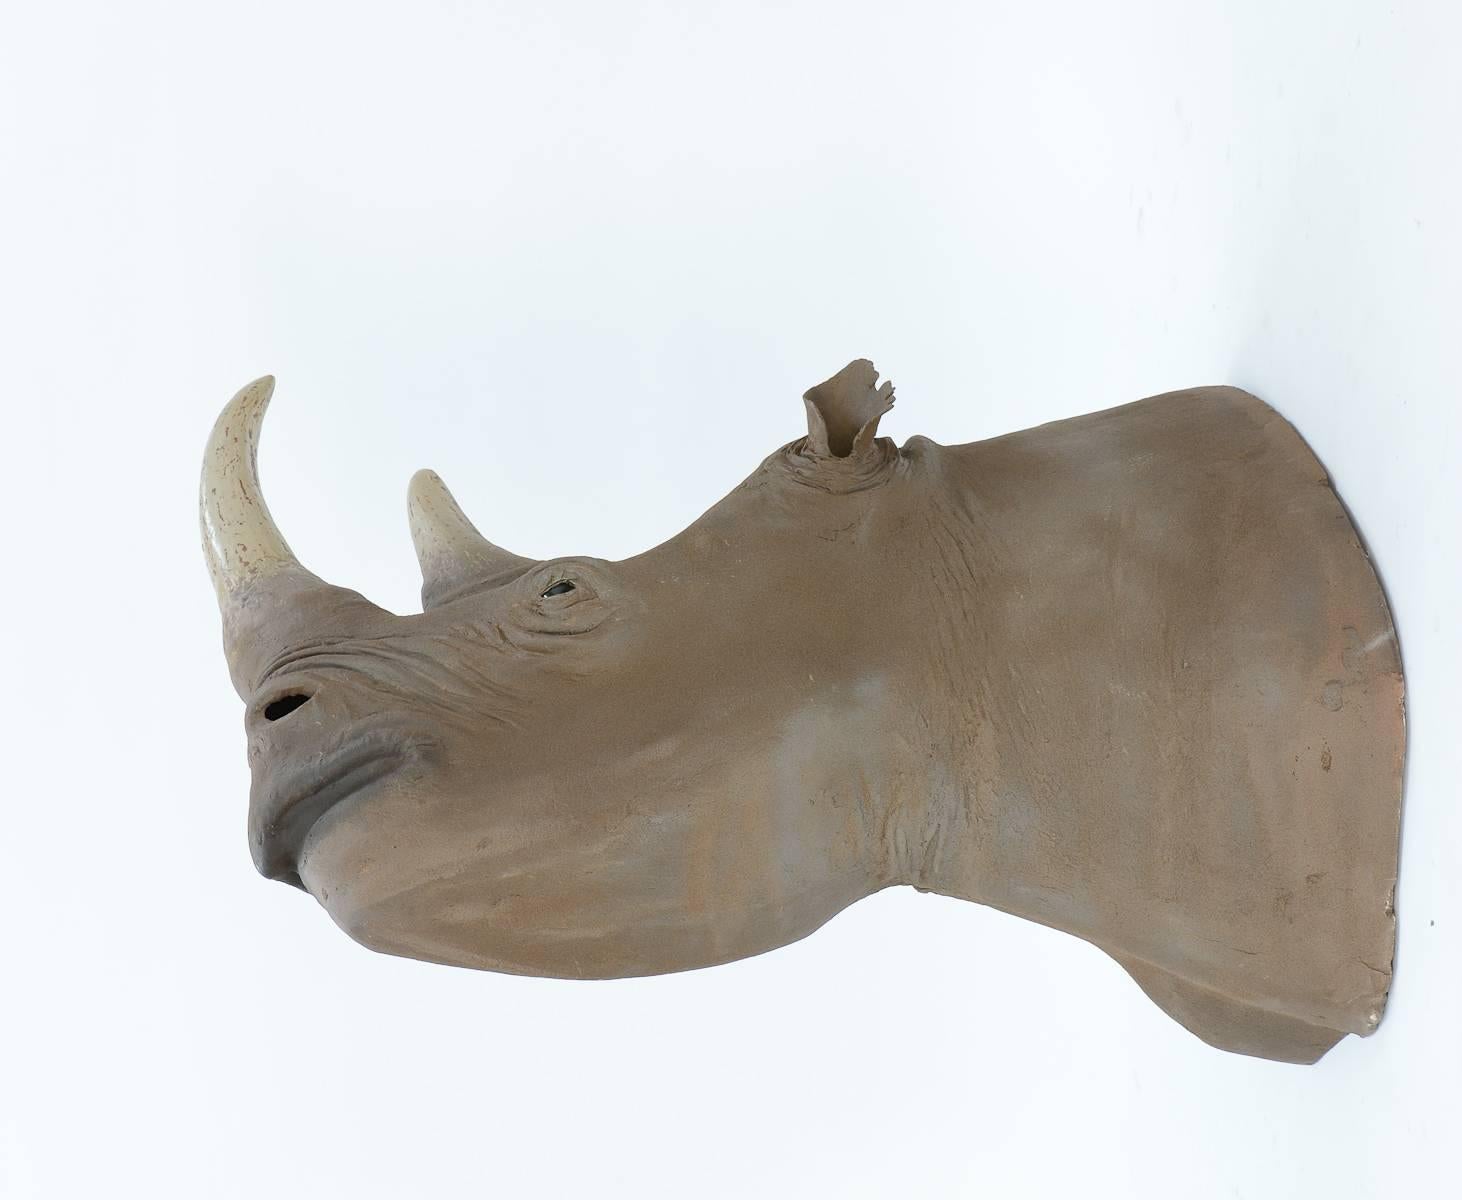 British 1950s Museum Full Scale African Black Rhinoceros Model